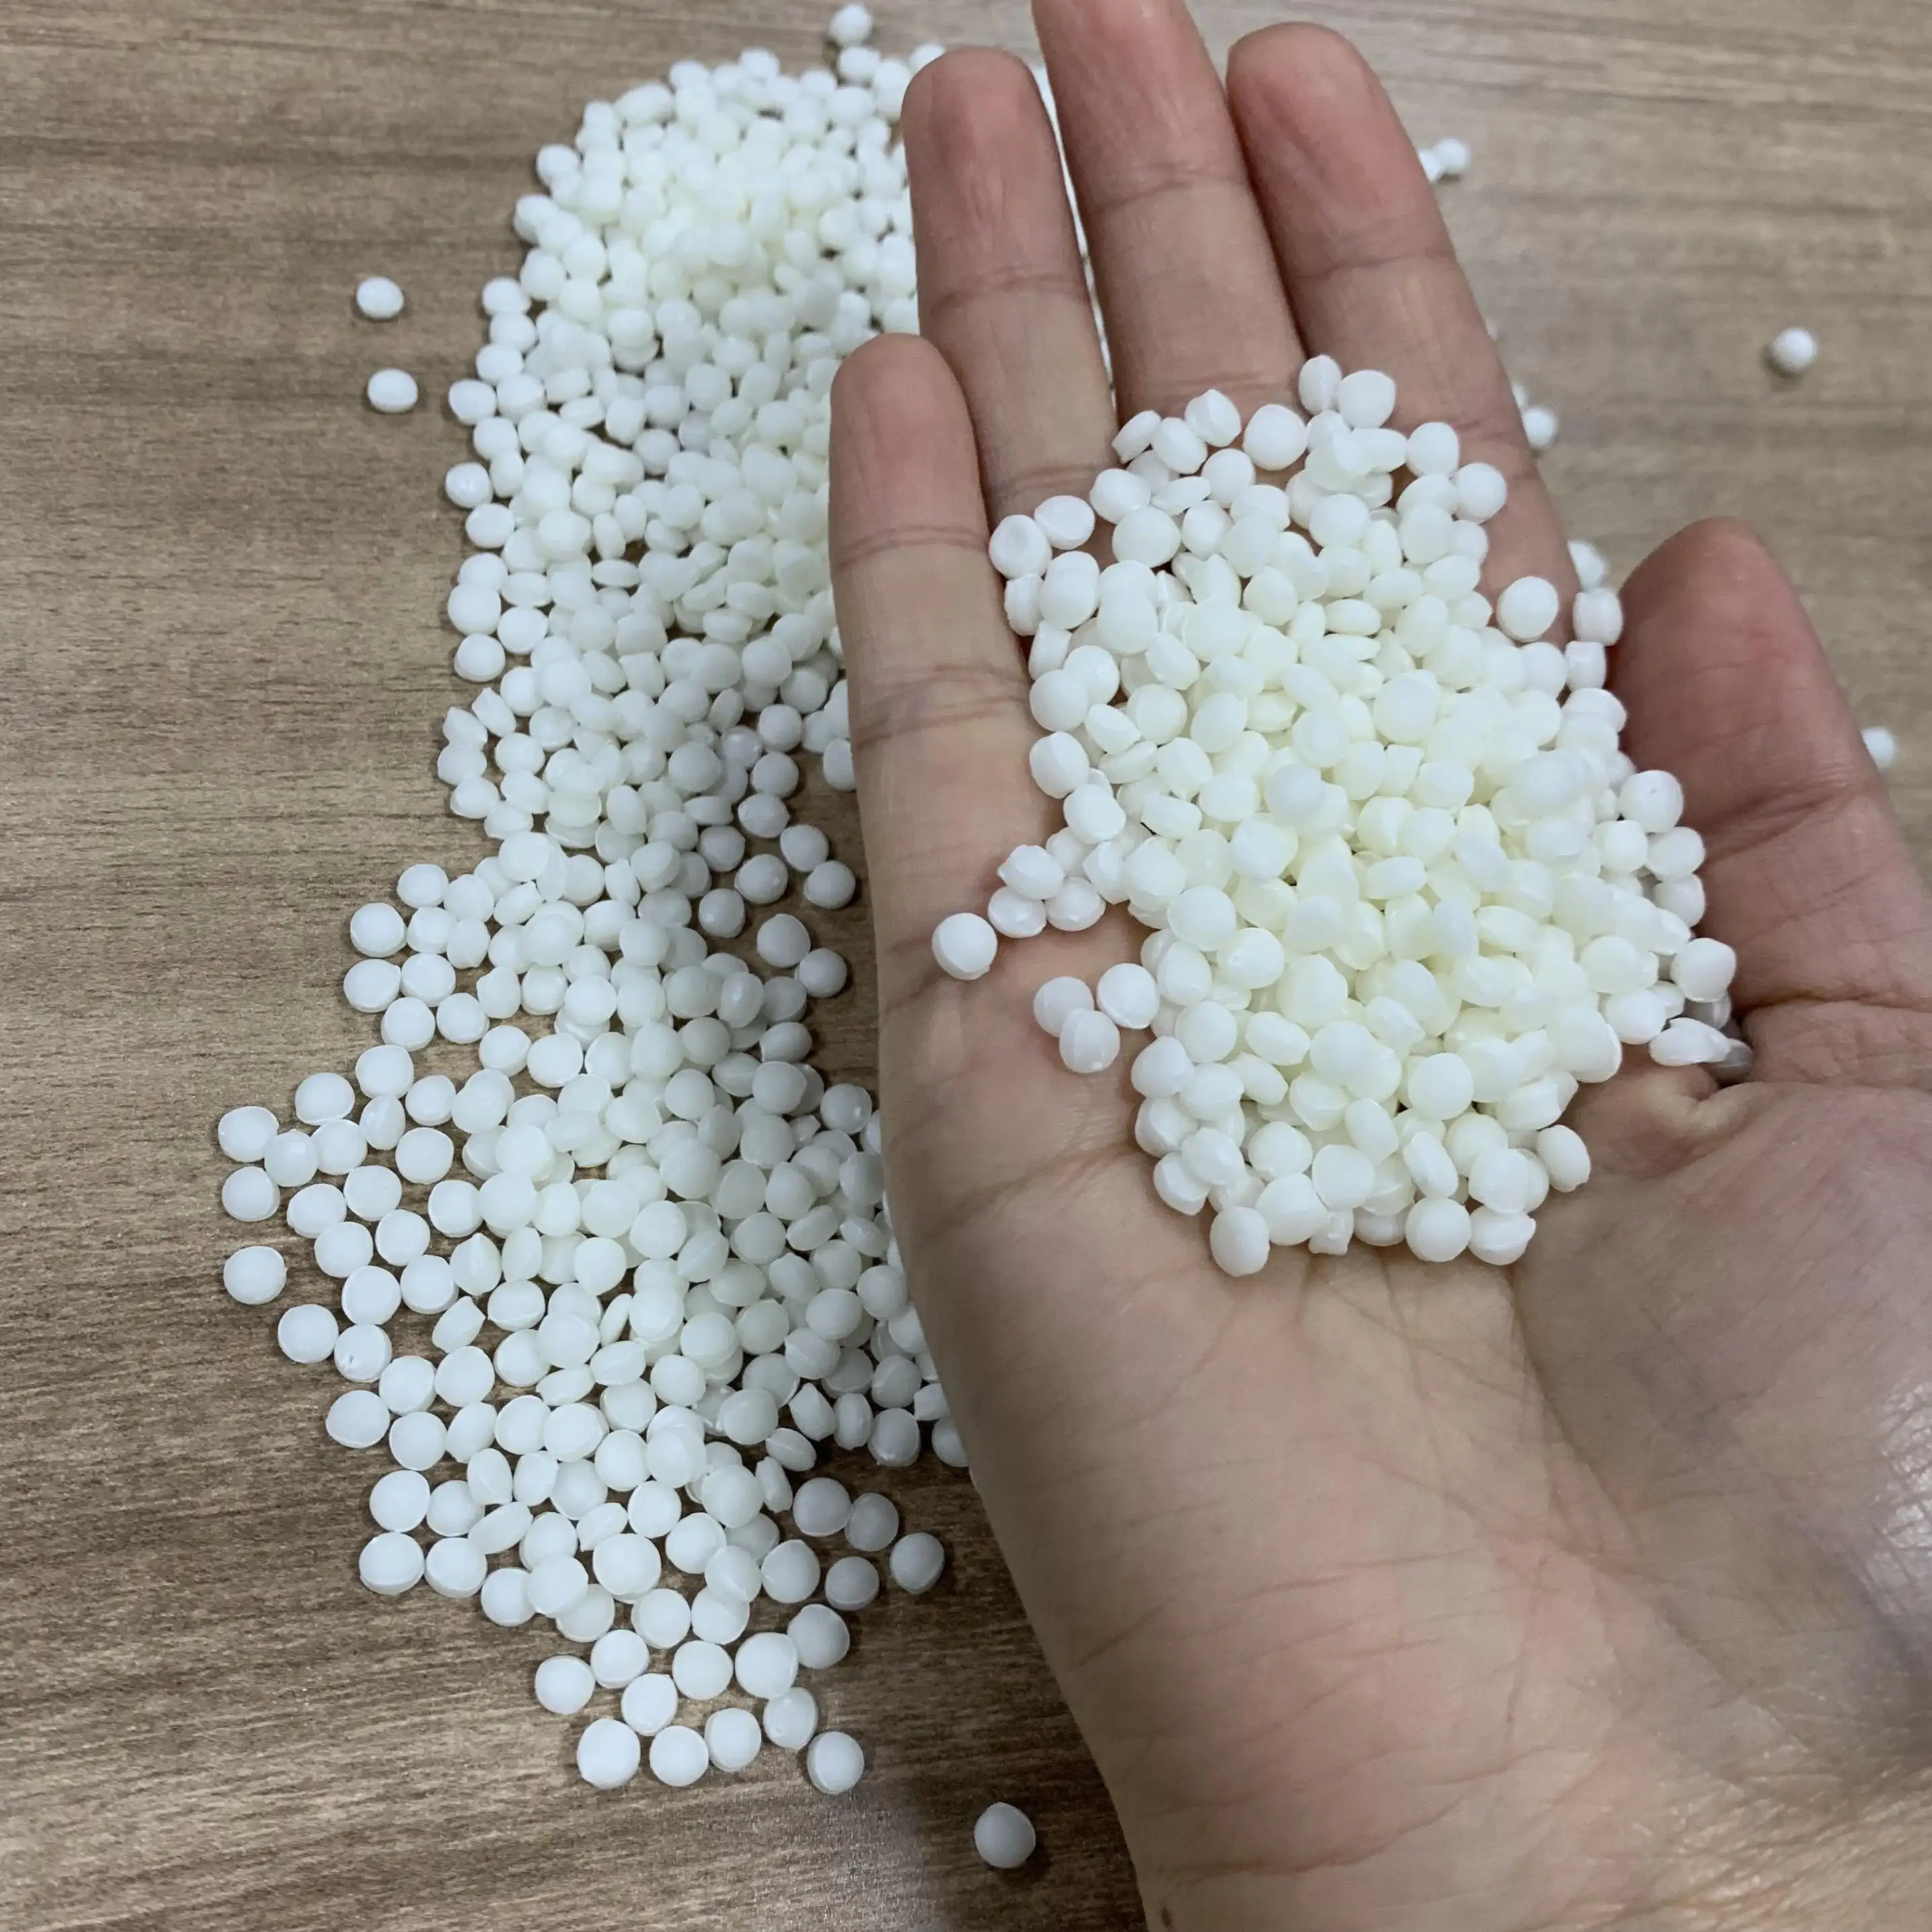 Plastique de qualité alimentaire polypropylène PP amidon de maïs plastique protection de l'environnement vaisselle jetable matériel